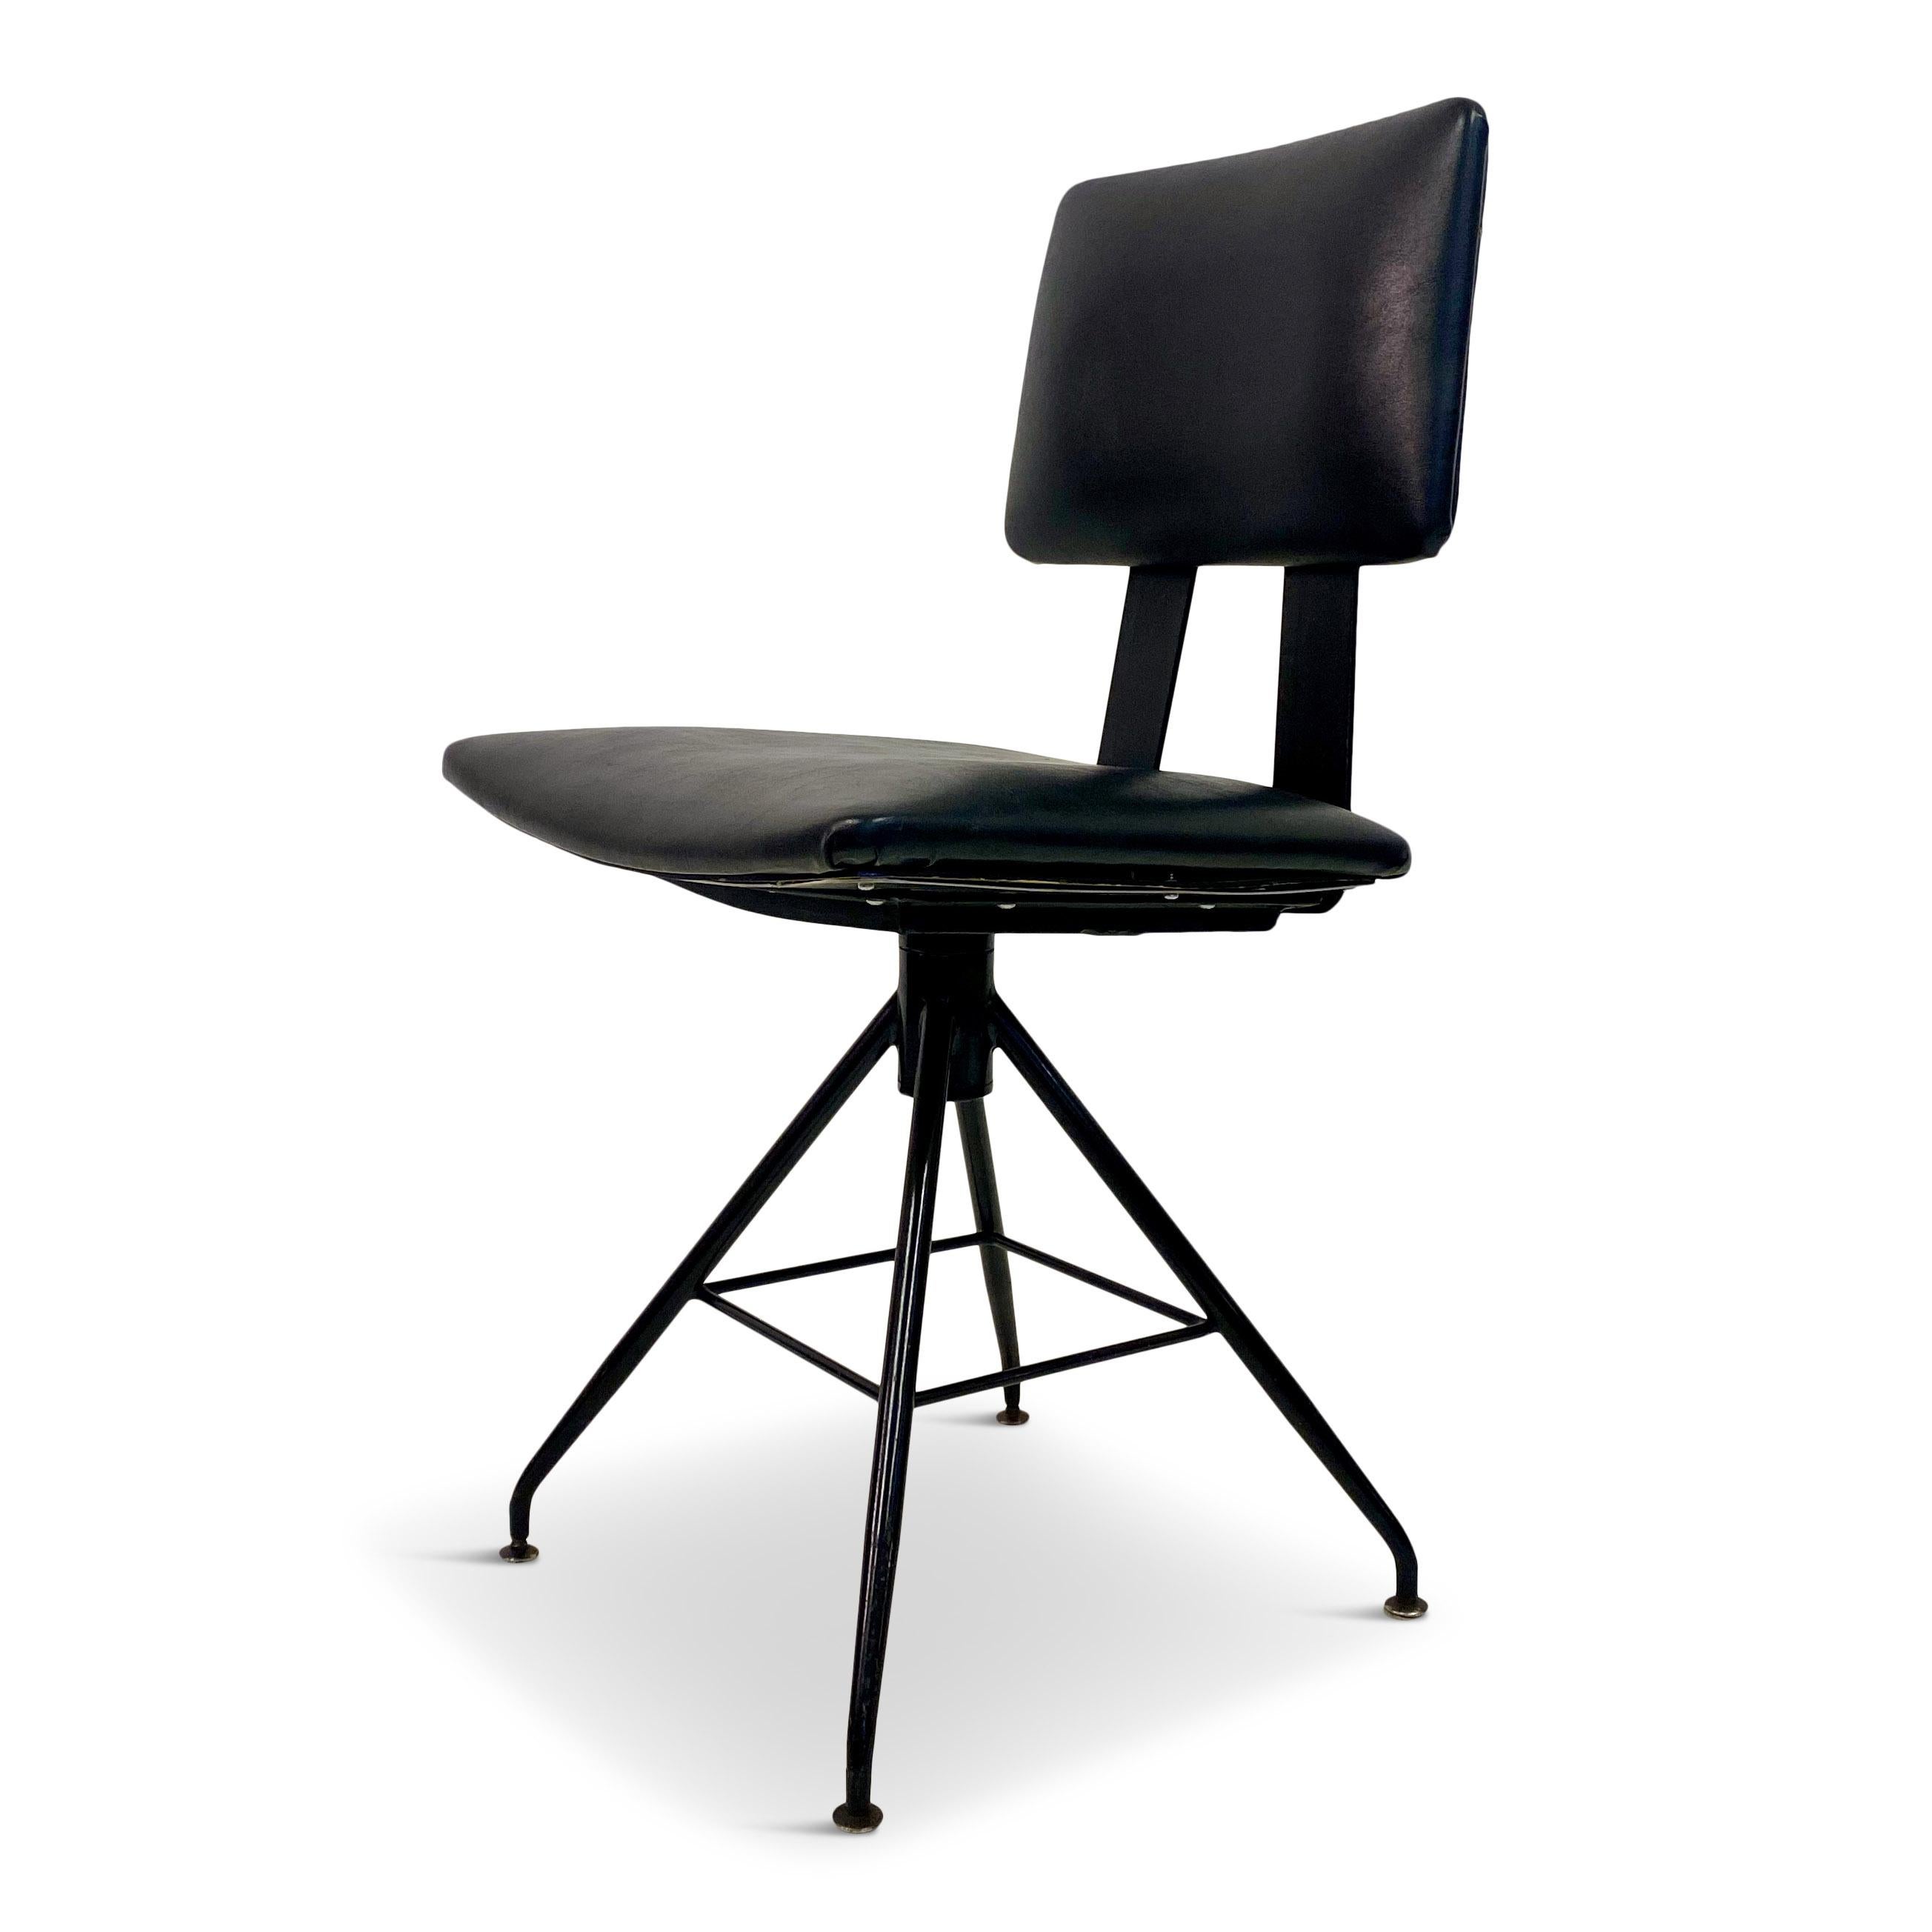 Swivel chair

Black vinyl

Black steel frame

Italy 1960s